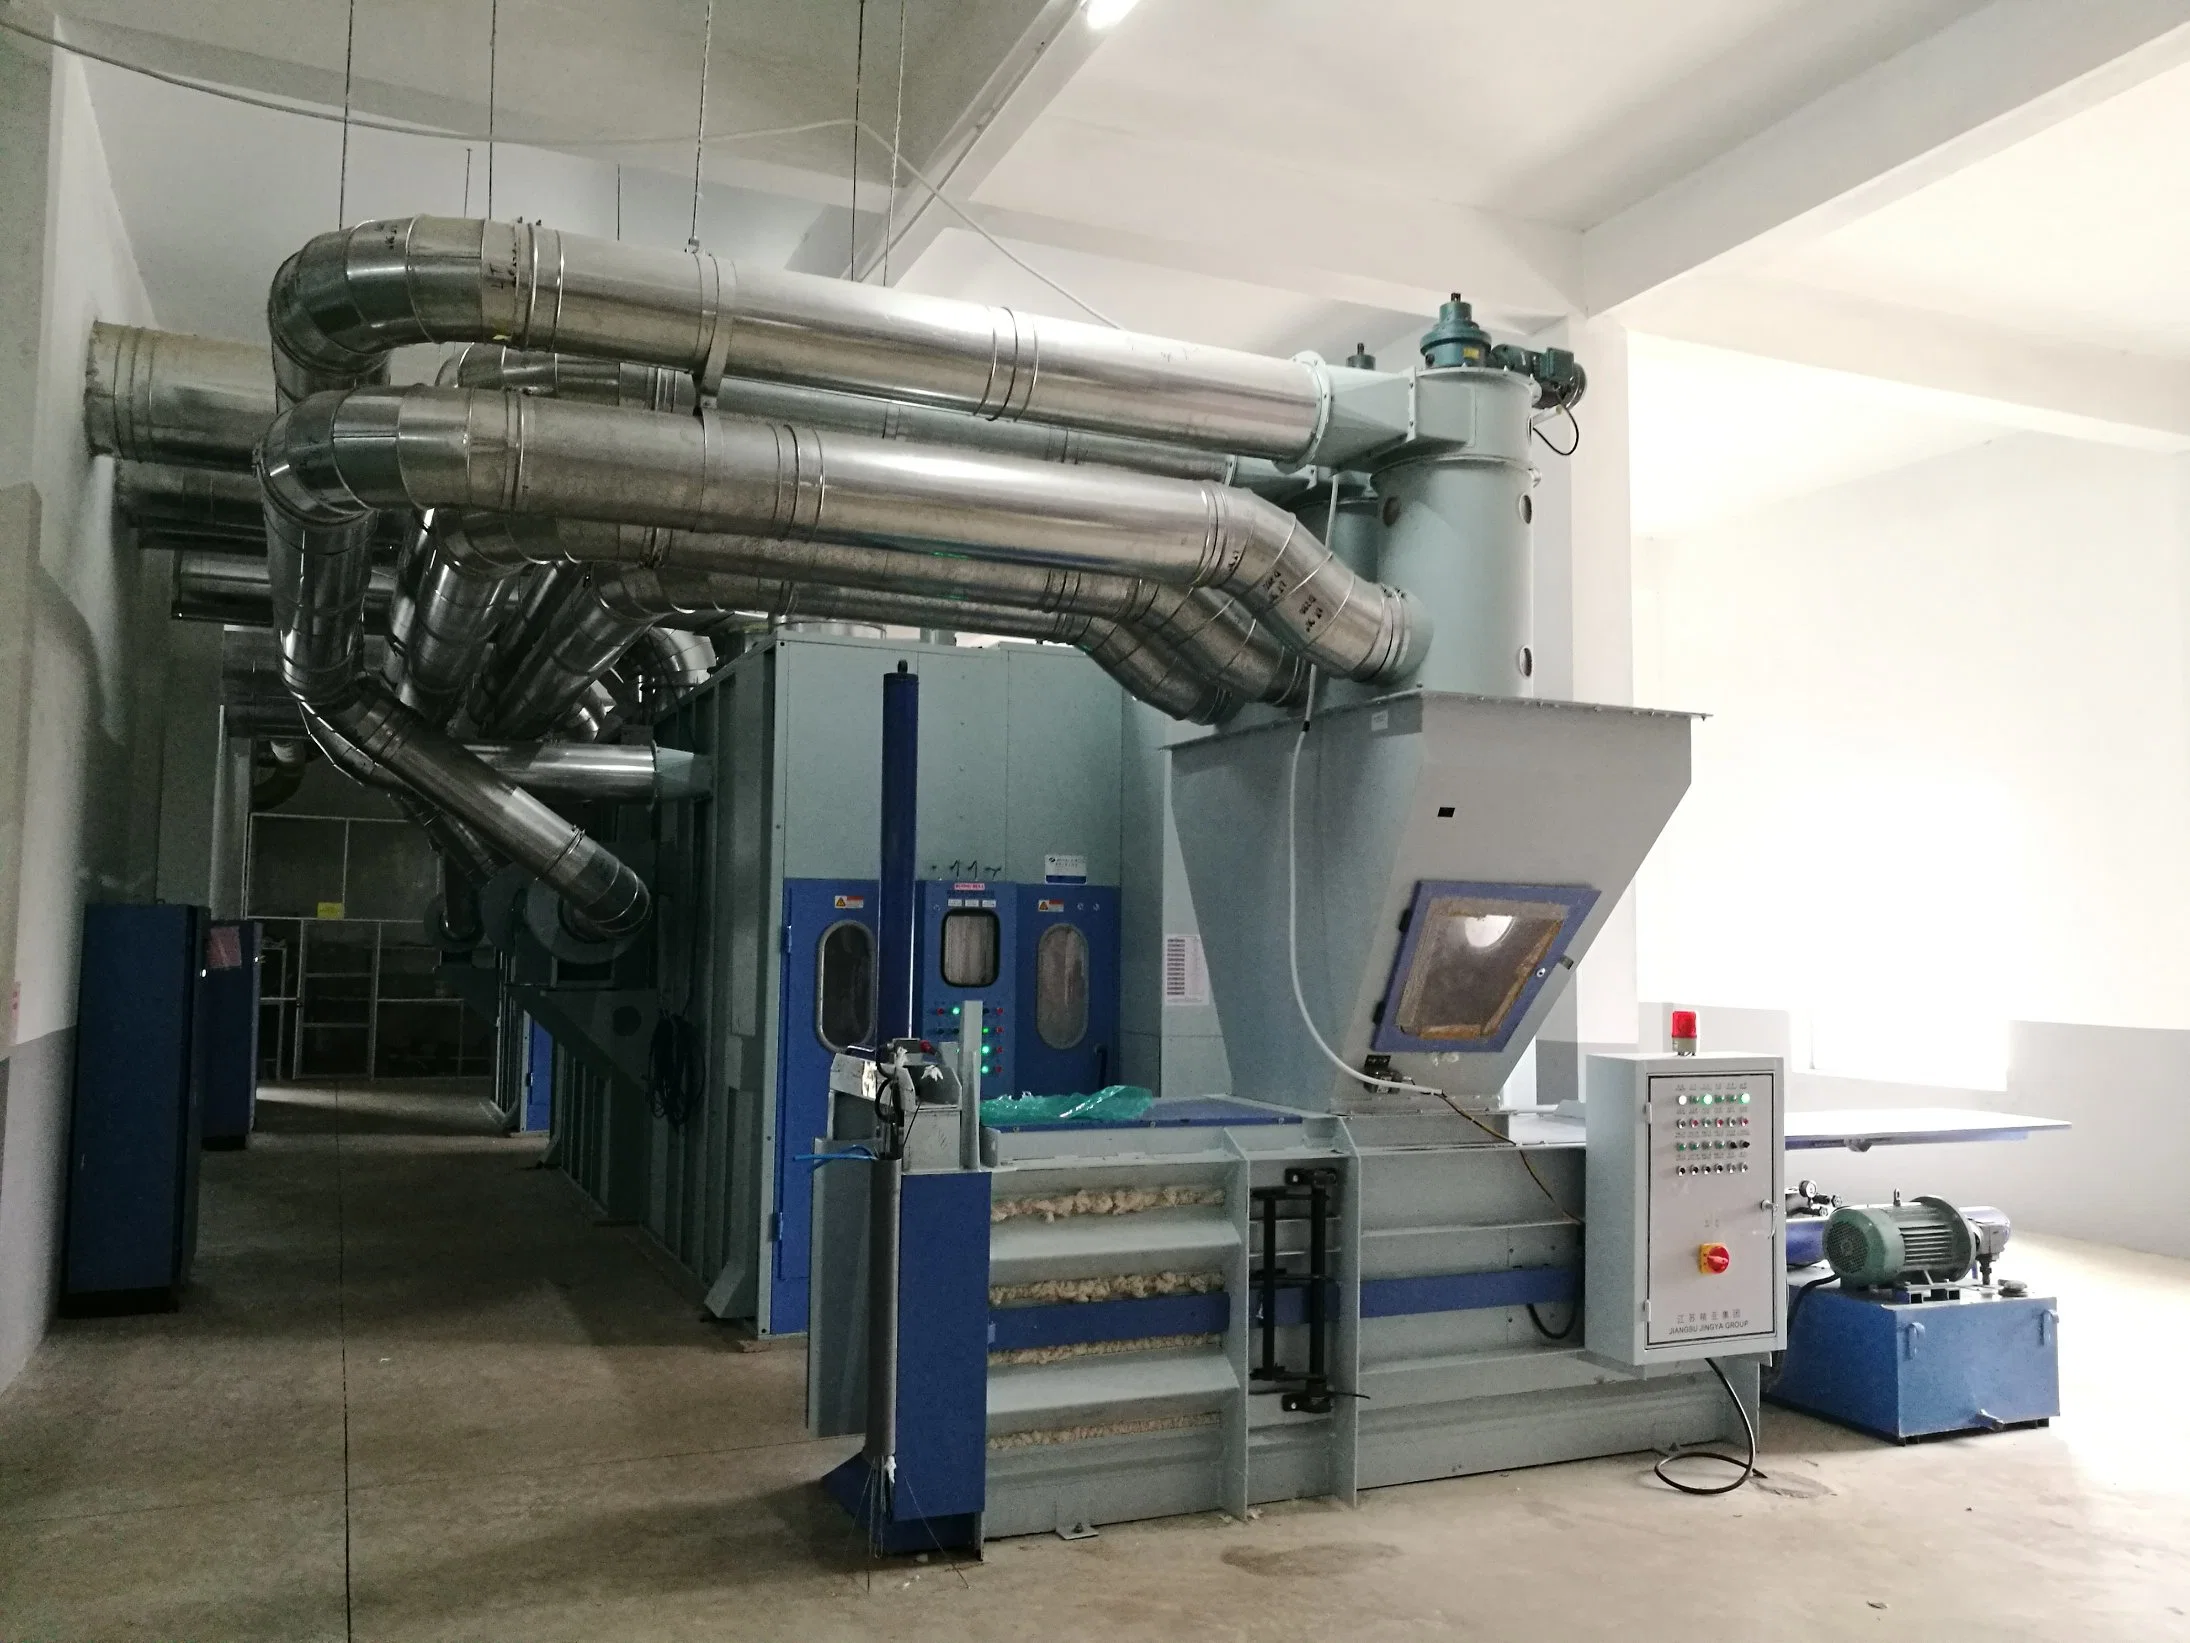 Acondicionador de aire máquina textil profesional como equipamiento textil para la fábrica.